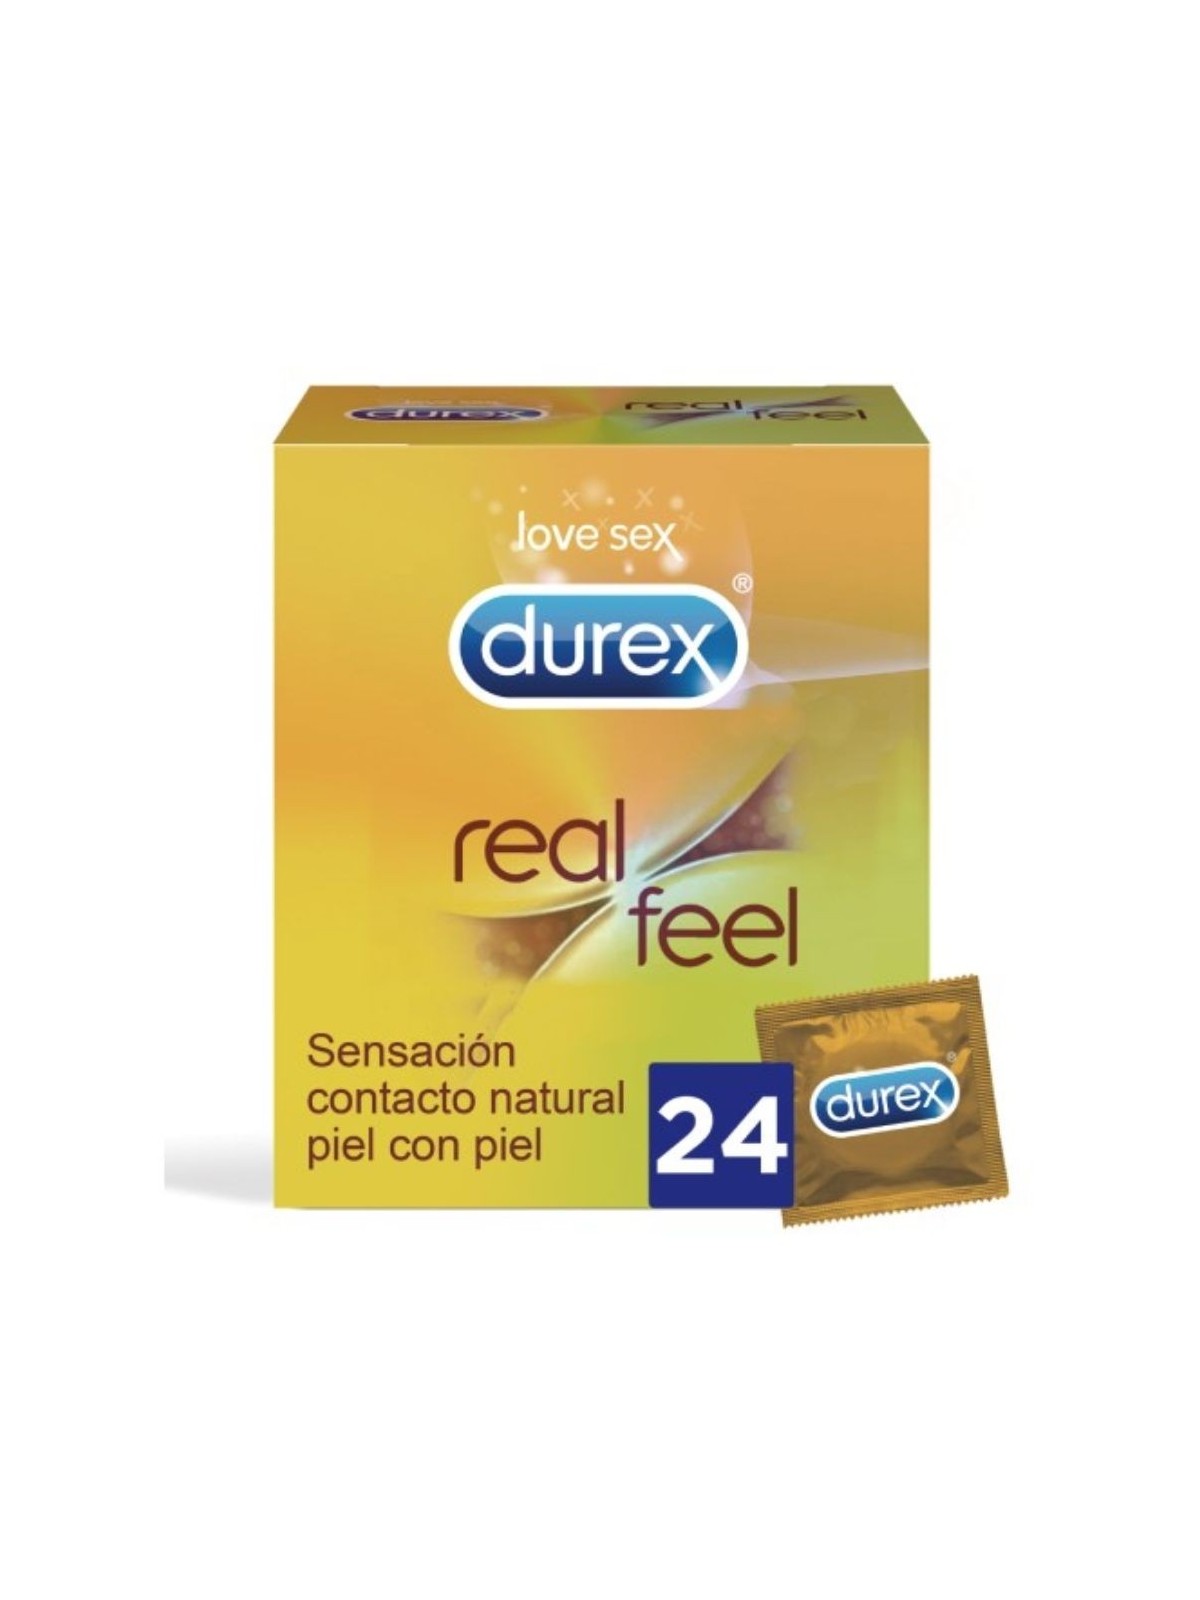 Durex Real Feel 24 uds - Comprar Condones sin látex Durex - Preservativos sin látex (1)